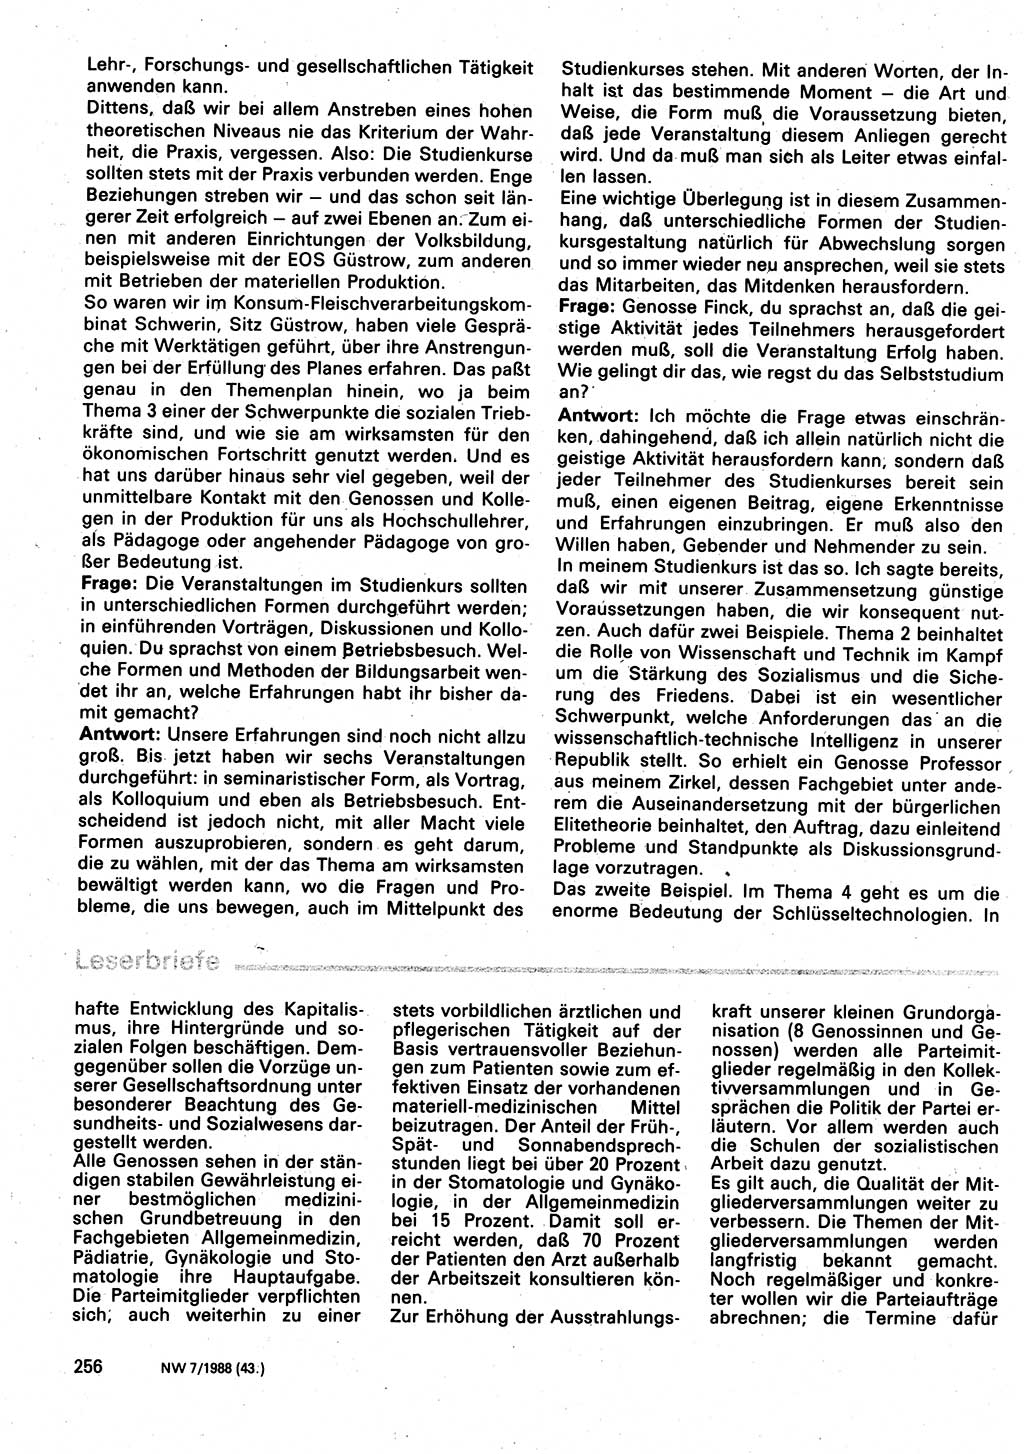 Neuer Weg (NW), Organ des Zentralkomitees (ZK) der SED (Sozialistische Einheitspartei Deutschlands) für Fragen des Parteilebens, 43. Jahrgang [Deutsche Demokratische Republik (DDR)] 1988, Seite 256 (NW ZK SED DDR 1988, S. 256)